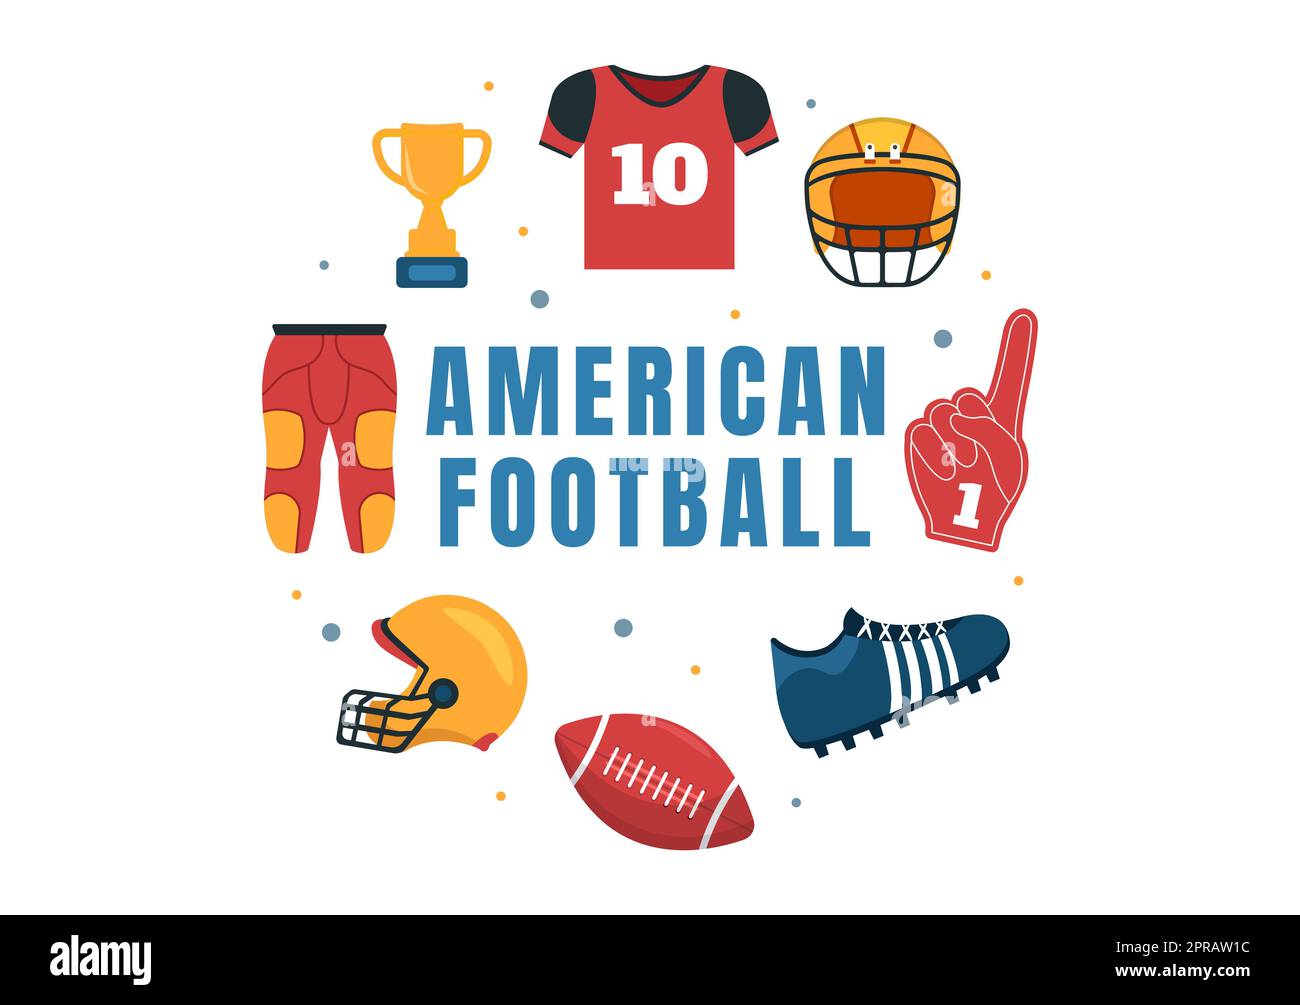 American Football Sports Player with the Game verwendet einen ovalen Ball und ist auf dem Feld von Hand gezeichnete Cartoon-flache Illustration braun Stockfoto